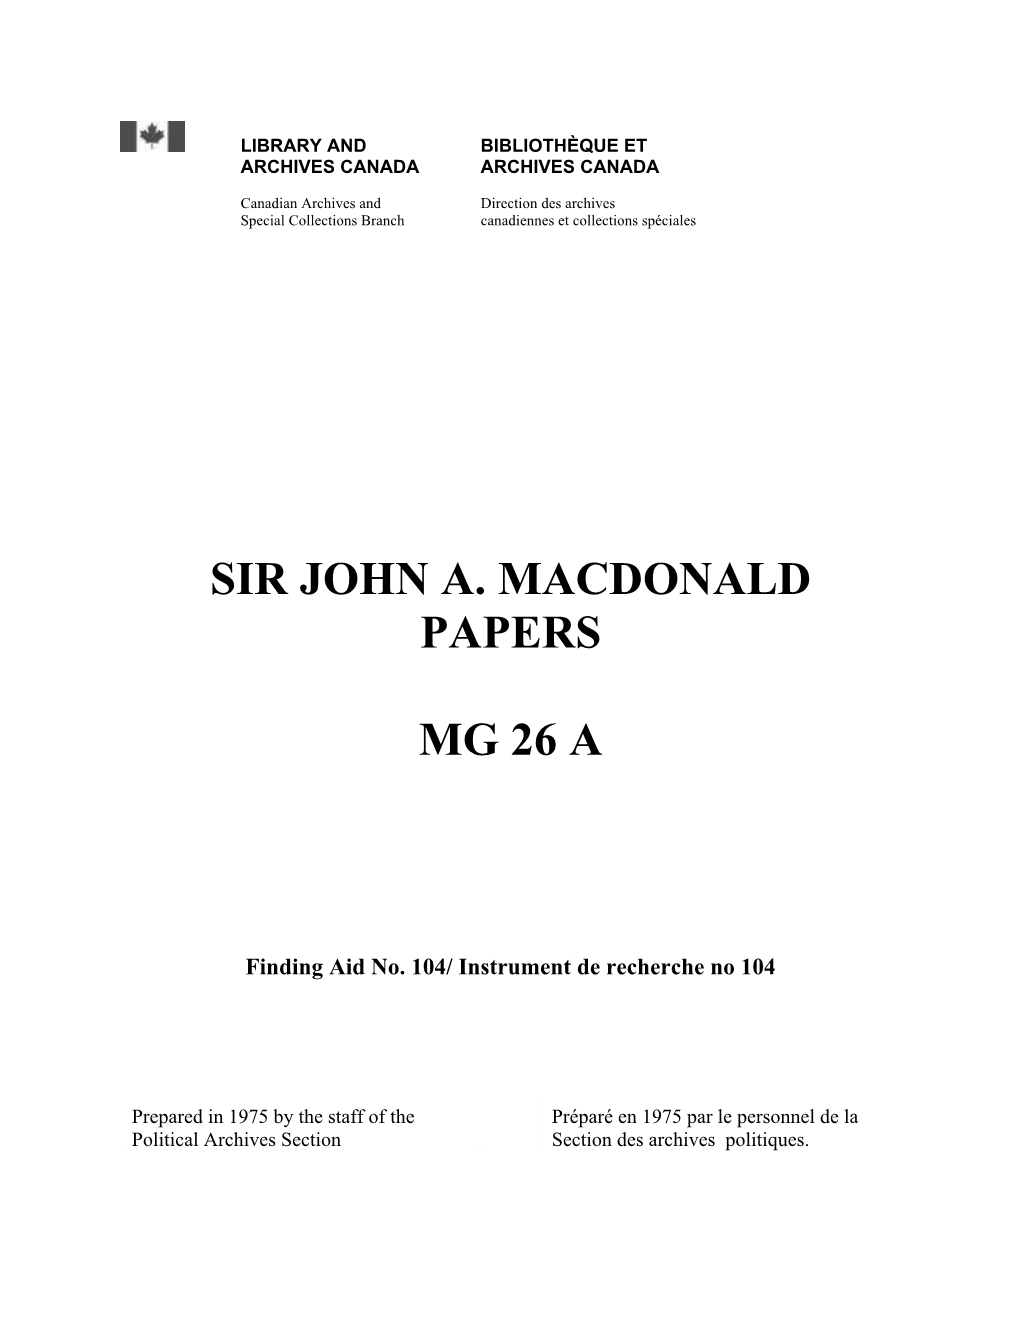 Sir John A. Macdonald Papers Mg 26 A